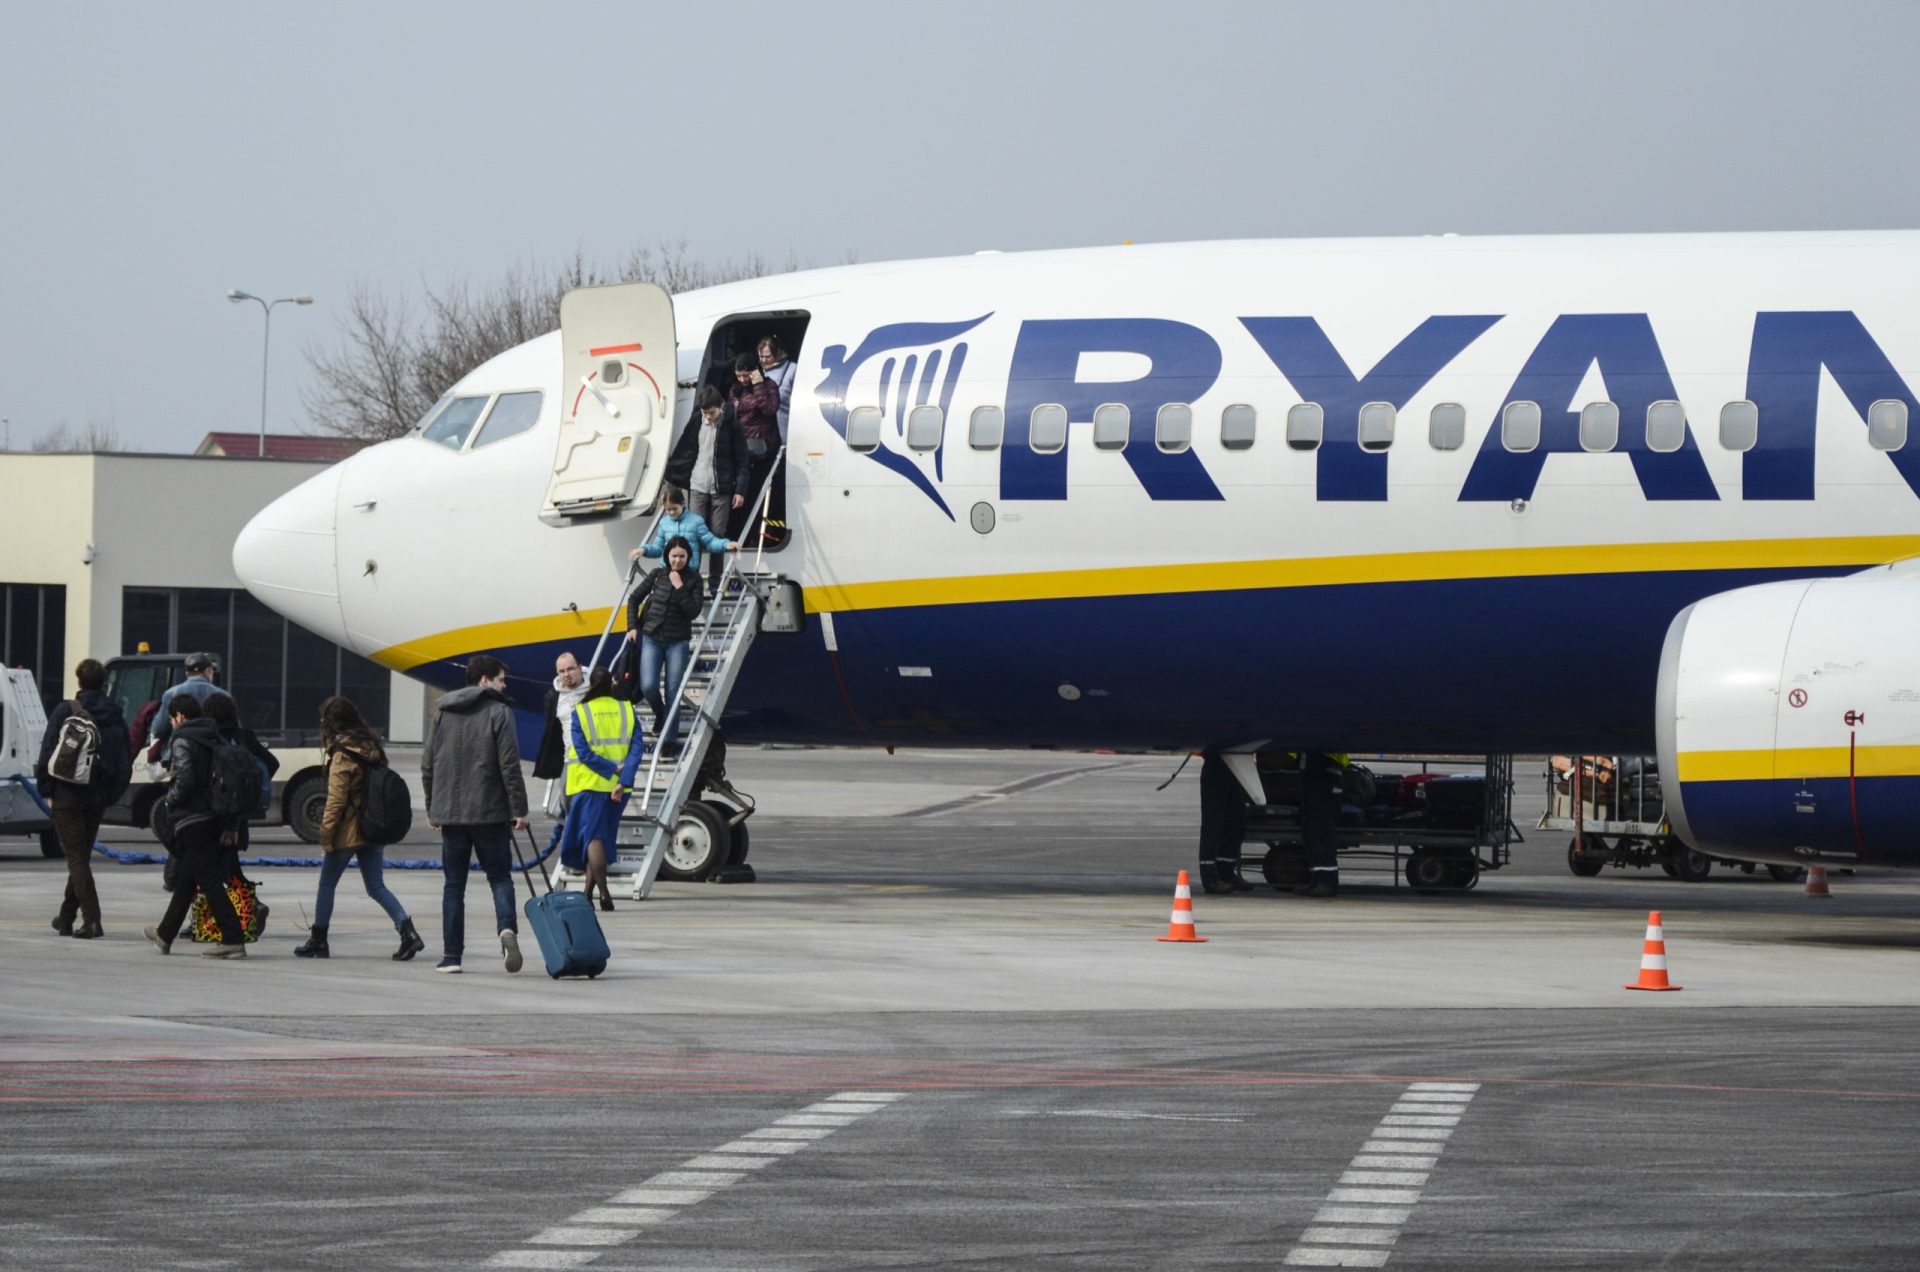 Ryanair envia cheques de compensação a clientes, mas afinal estavam inválidos